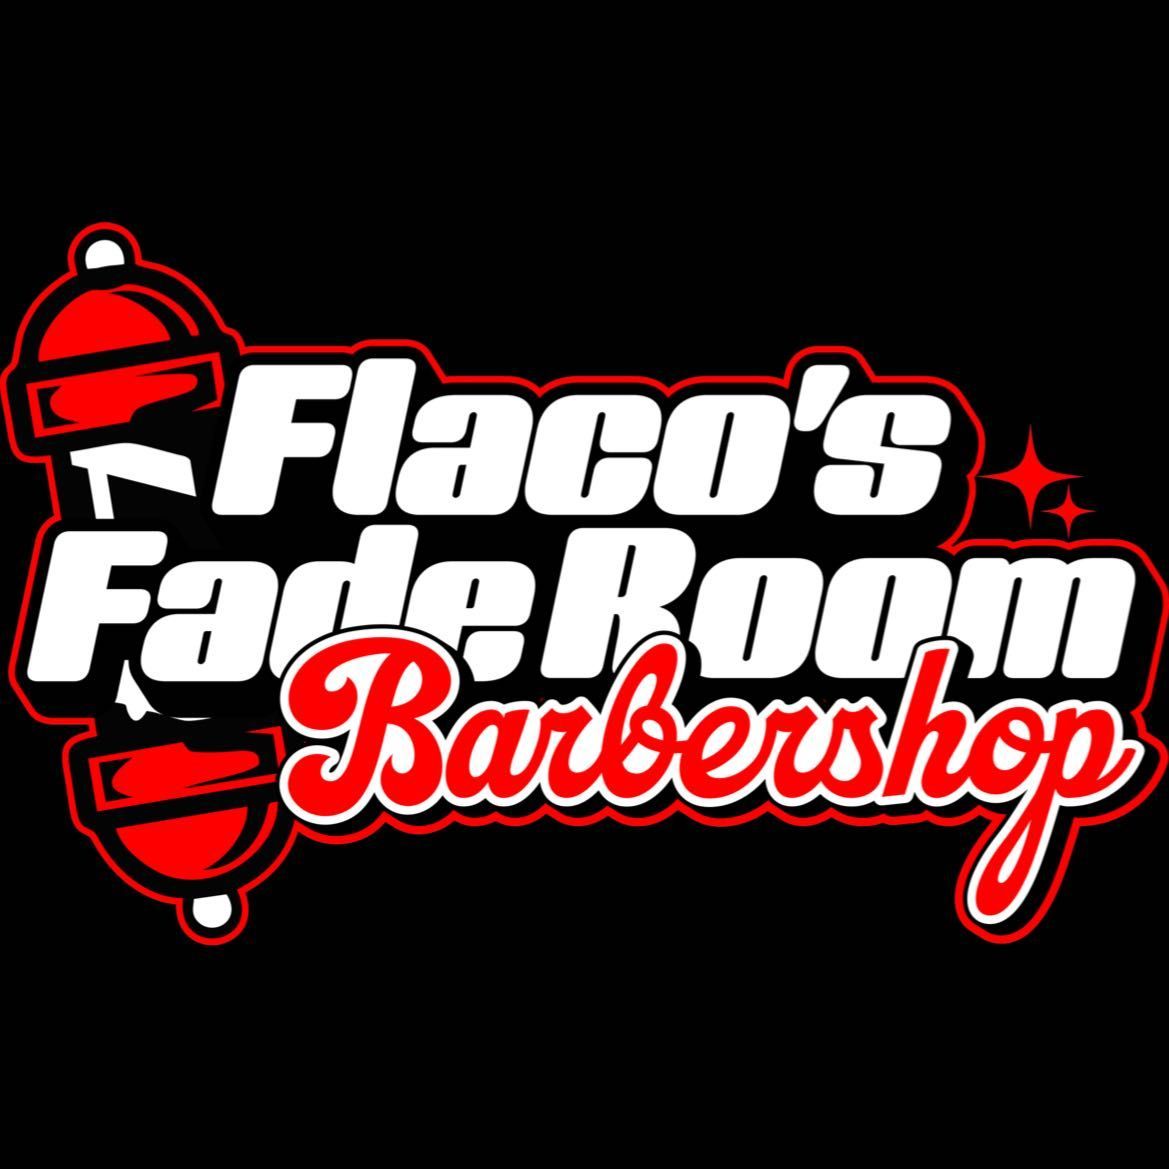 Flaco’s Fade Room, 4343 Dewey Avenue, Rochester, 14616